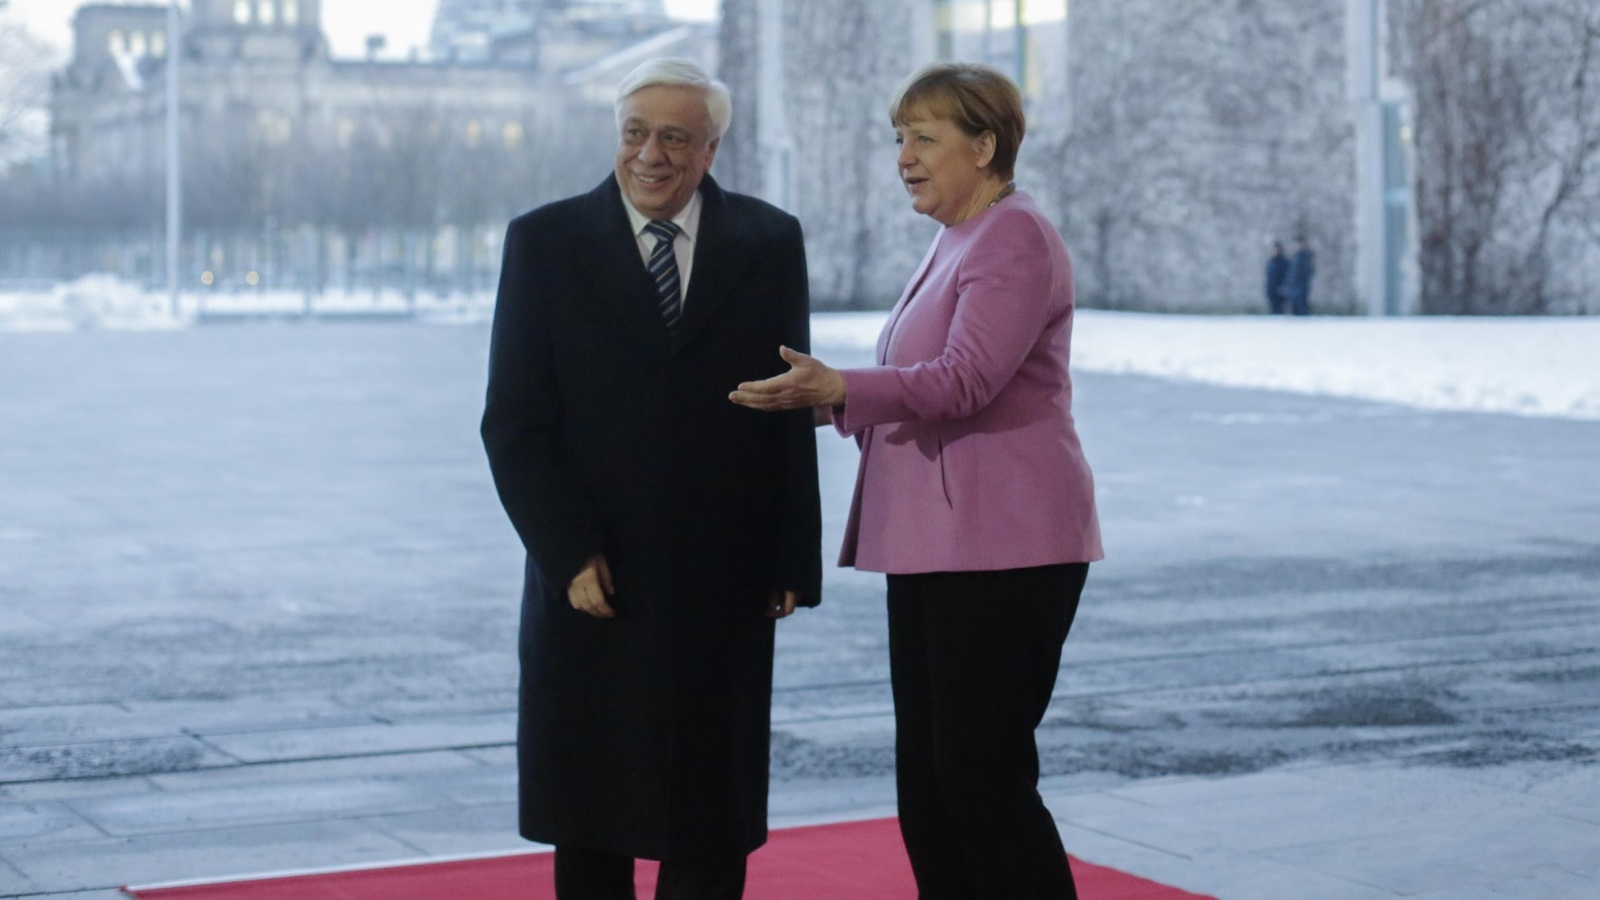 الرئيس اليوناني بروكوبيس بافلوبولو أثناء لقائه في برلين مع المستشارة أنجيلا ميركل  (أسوشيتد برس)